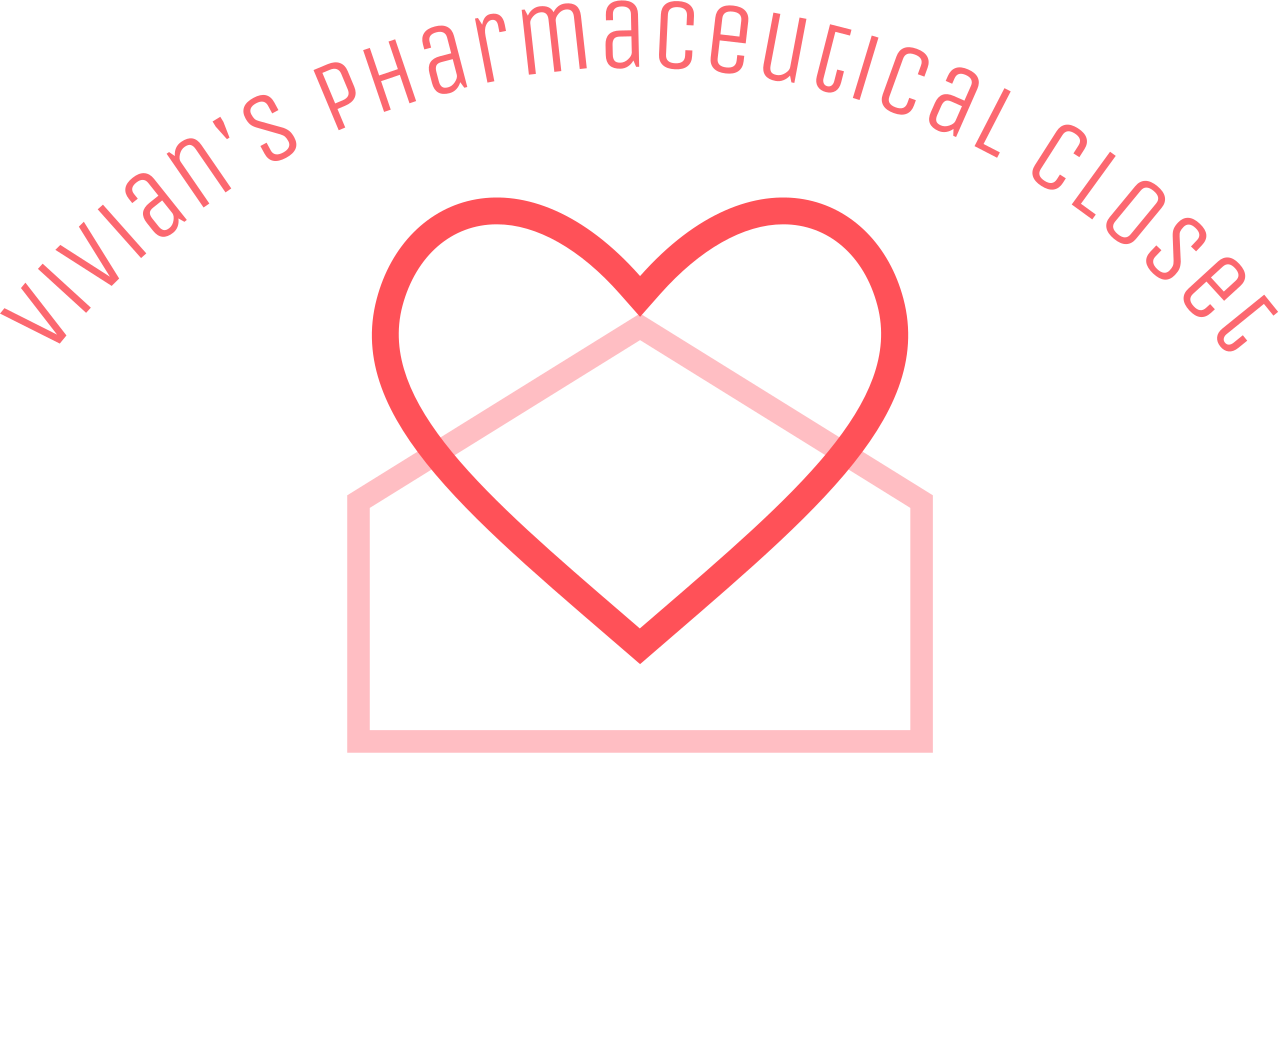 Vivian's Pharmaceutical Closet's web page